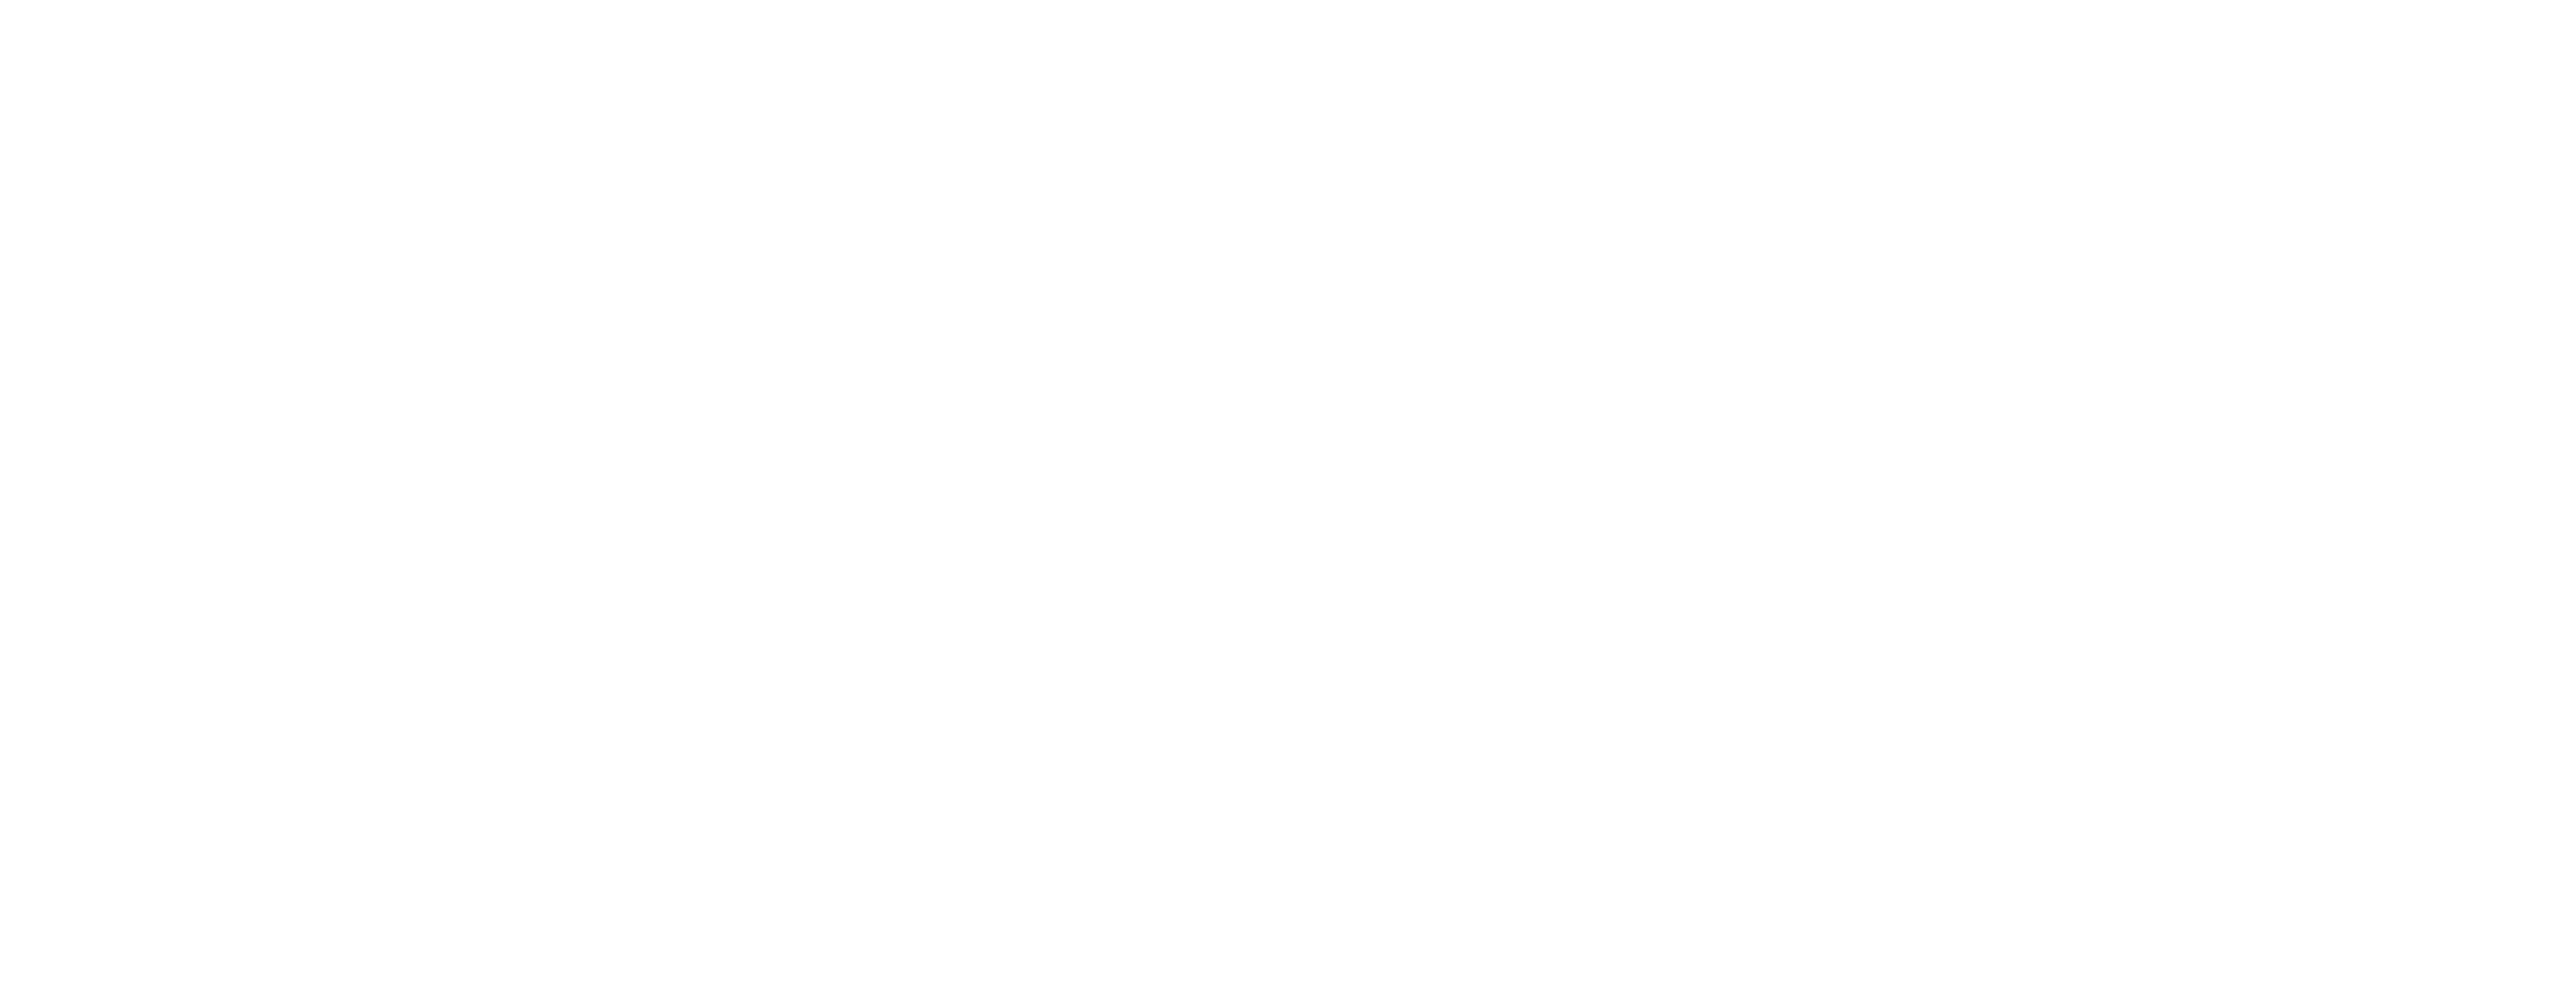 wildfire coalition logo white